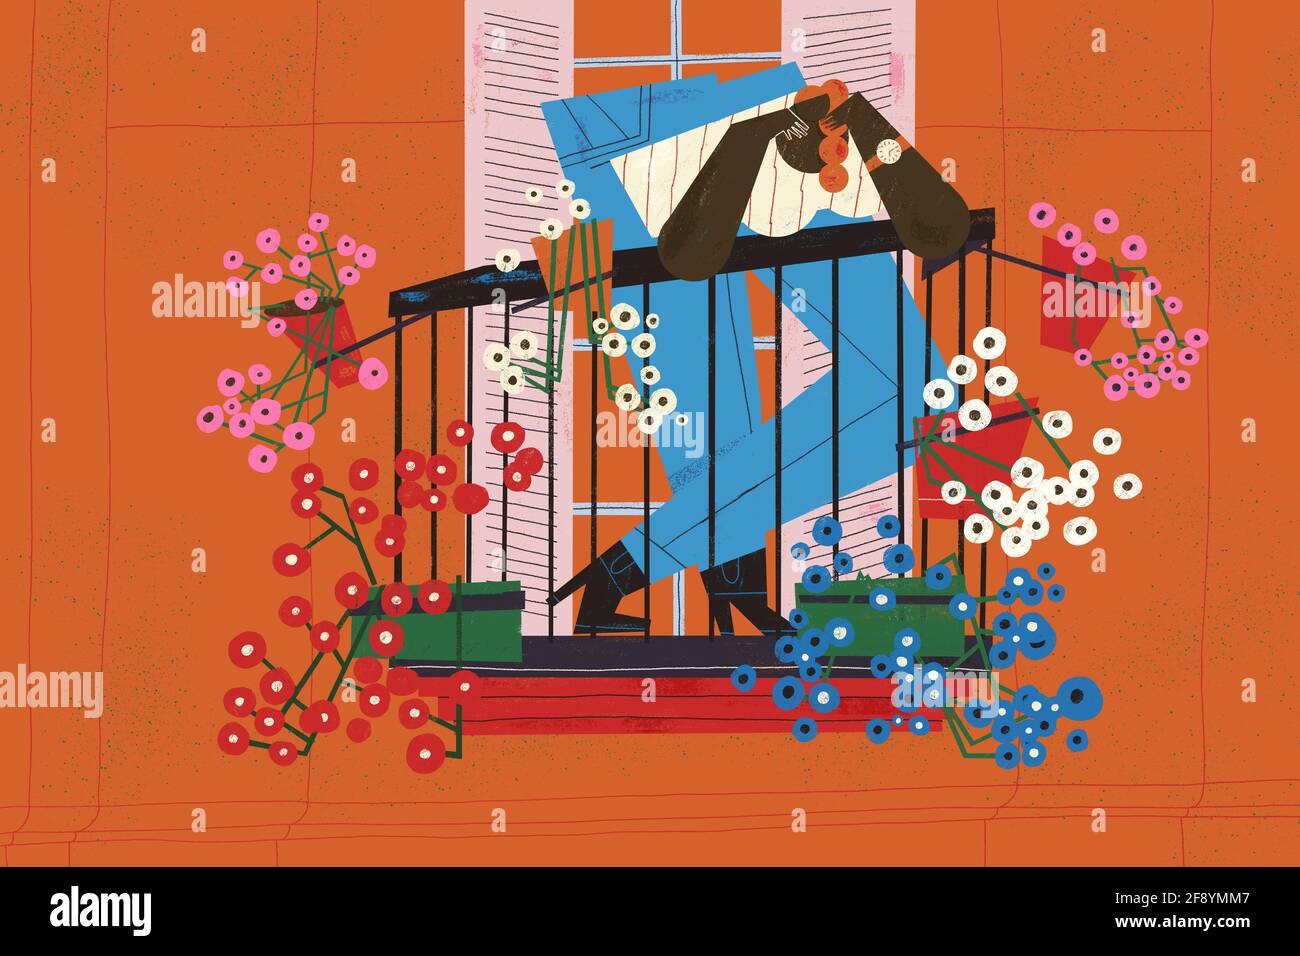 La joven adulta se mantiene positiva y disfruta de su colorido balcón florido. Concepto de ilustración de bienestar y estilo de vida. Foto de stock